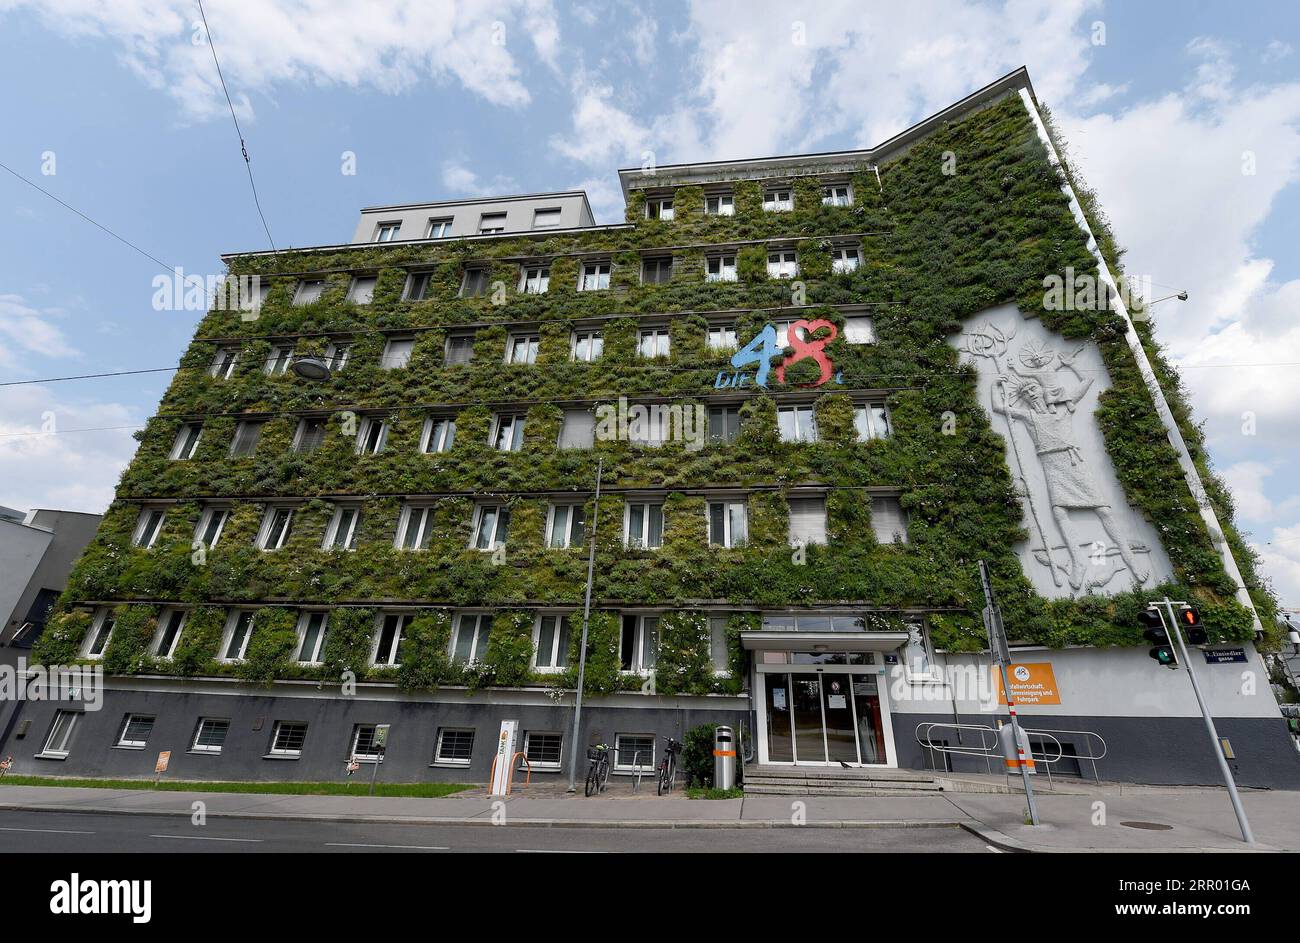 200722 -- WIEN, 22. Juli 2020 -- Foto vom 22. Juli 2020 zeigt eine grüne Fassade des Hauptsitzes der MA 48 in Wien, Österreich. Die Fassaden des Hauptquartiers der MA 48 waren mit grünen Pflanzen gesäumt, die sich positiv auf das Mikroklima, den Schutz der Bausubstanz vor treibendem Regen und Schmutzablagerungen, den Lärmschutz und die Kühlleistung auswirkten. ÖSTERREICH-WIEN-MA 48 HAUPTSITZ-GRÜNE FASSADEN GUOXCHEN PUBLICATIONXNOTXINXCHN Stockfoto